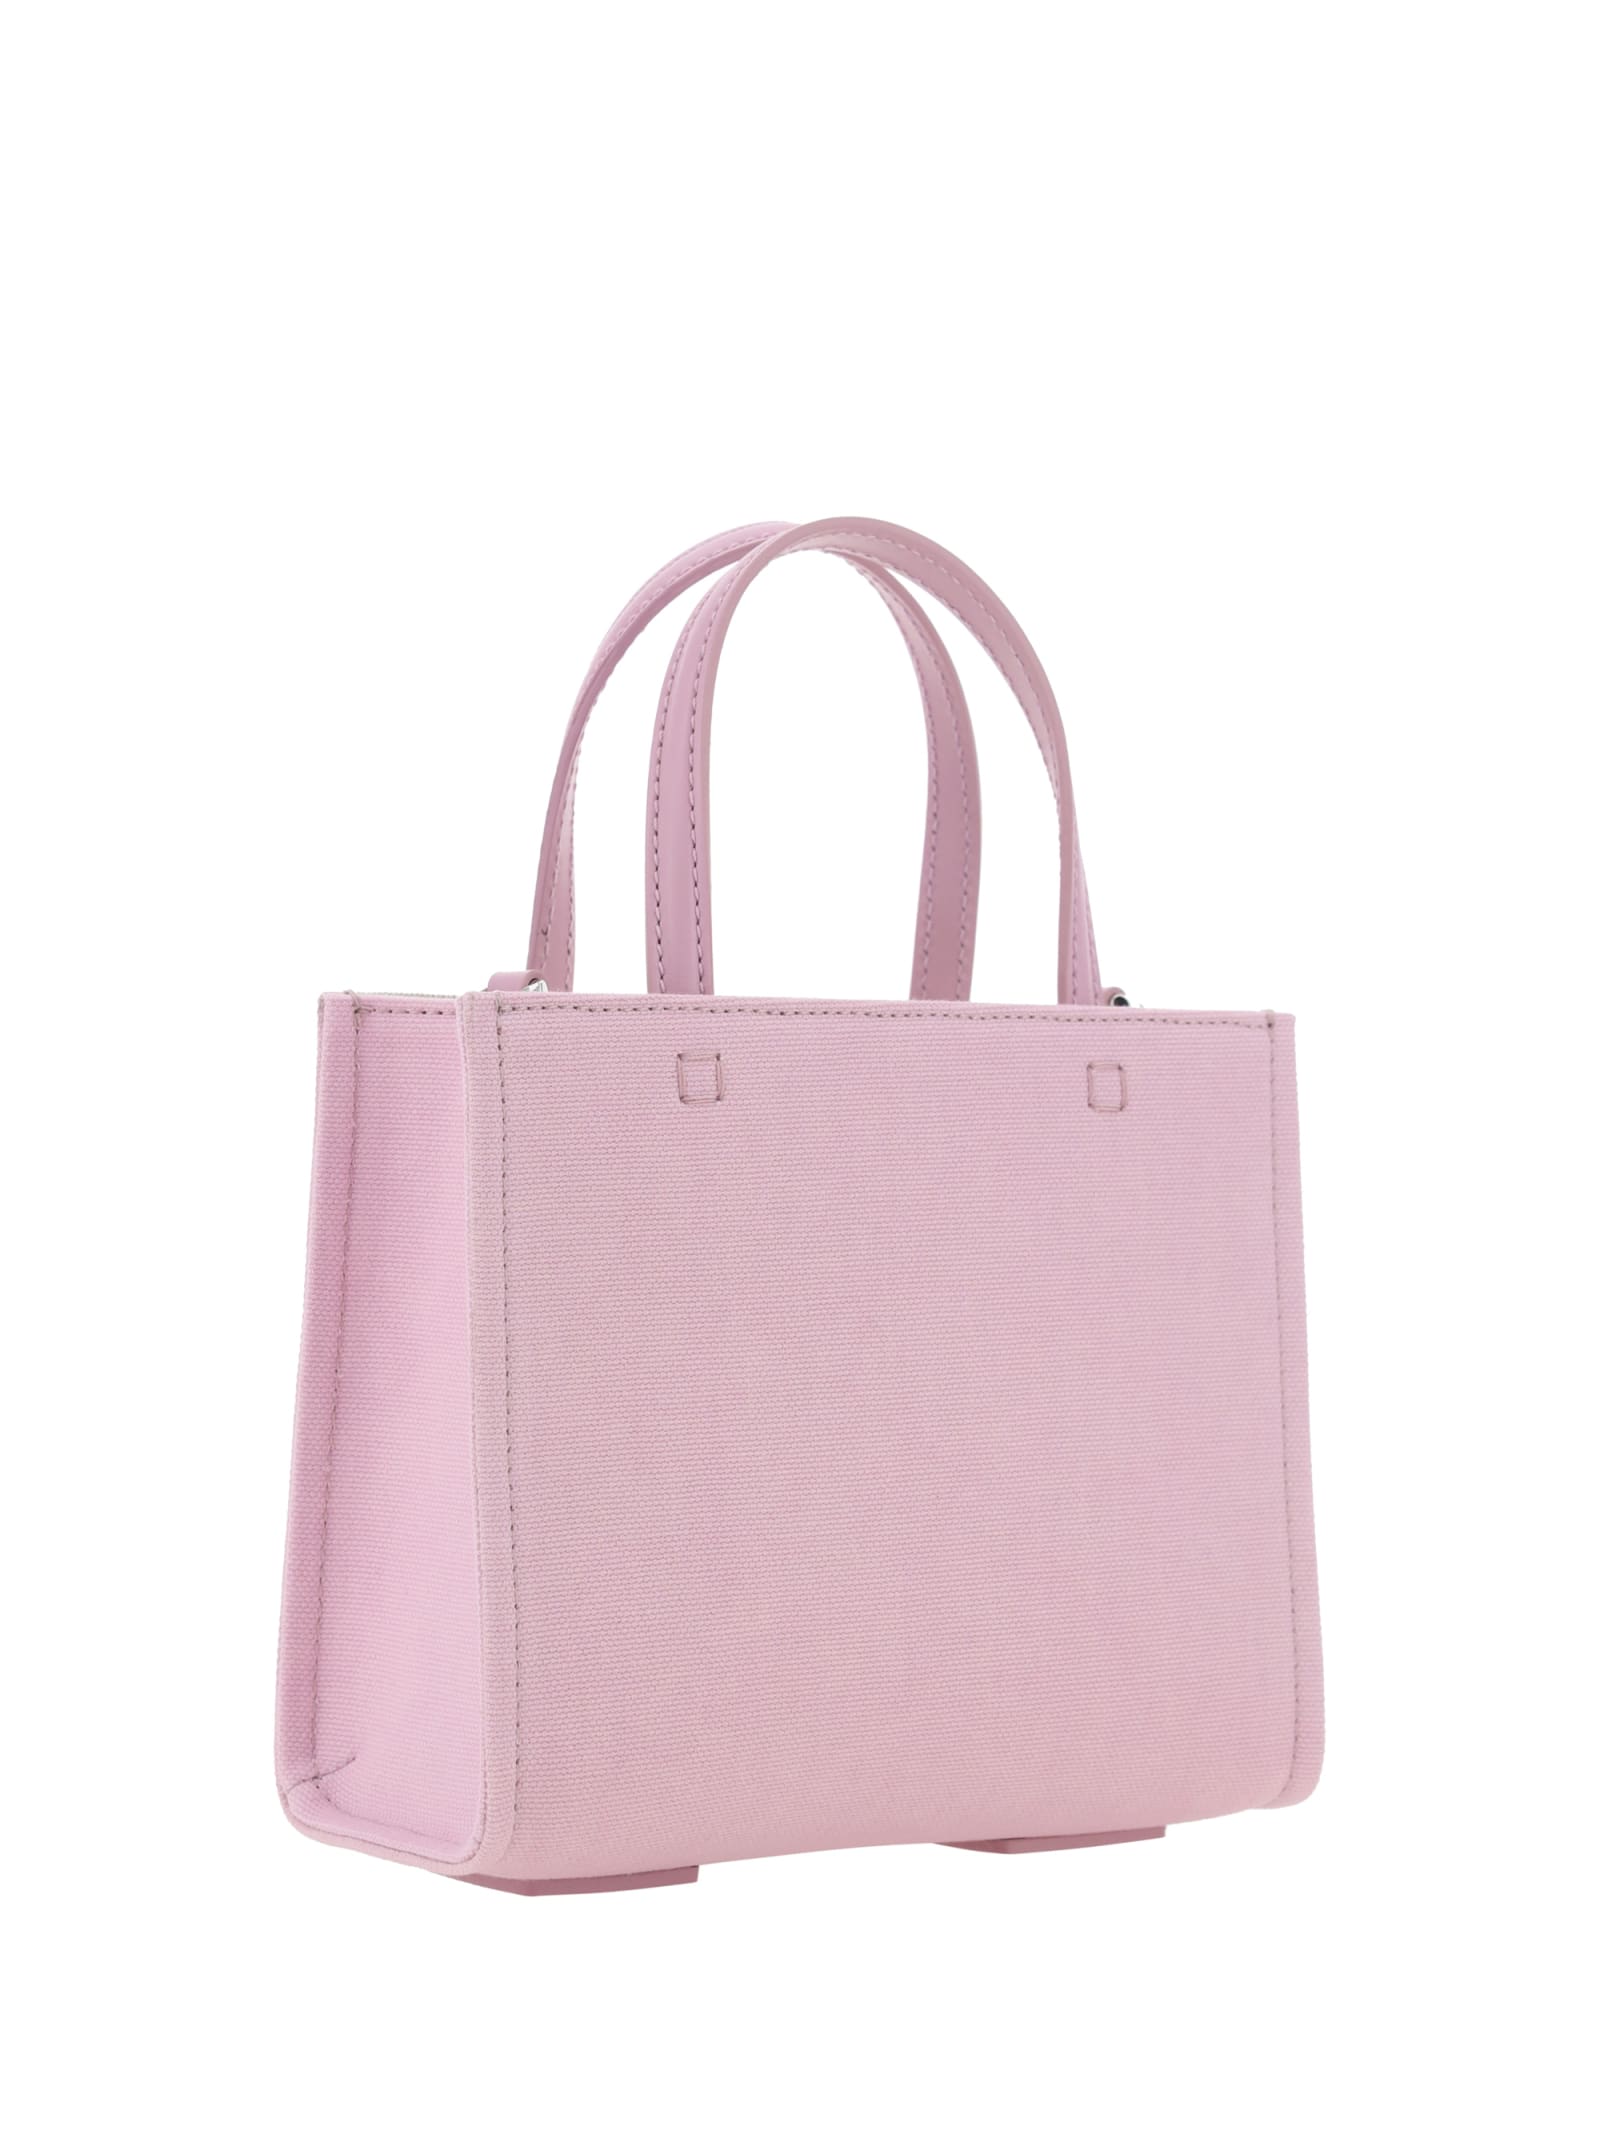 Shop Givenchy Tote Mini Handbag In Pink